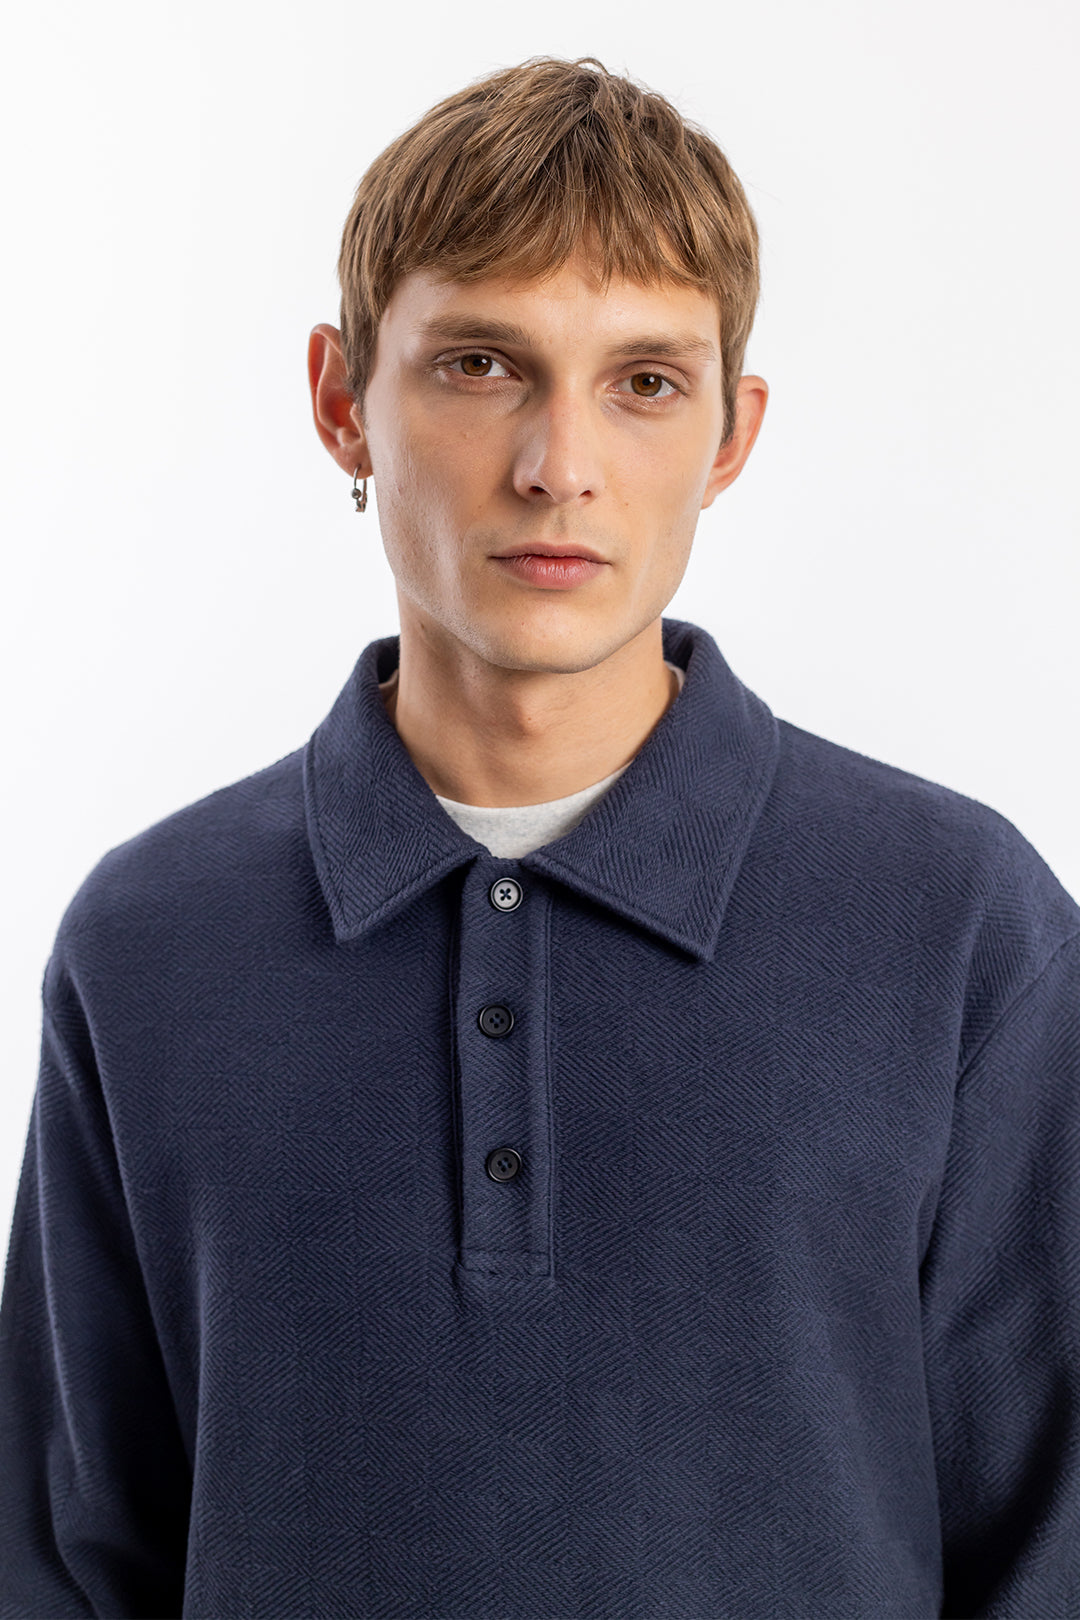 Dunkelblaues, langärmliges Polo Shirt aus Bio-Baumwolle von Rotholz